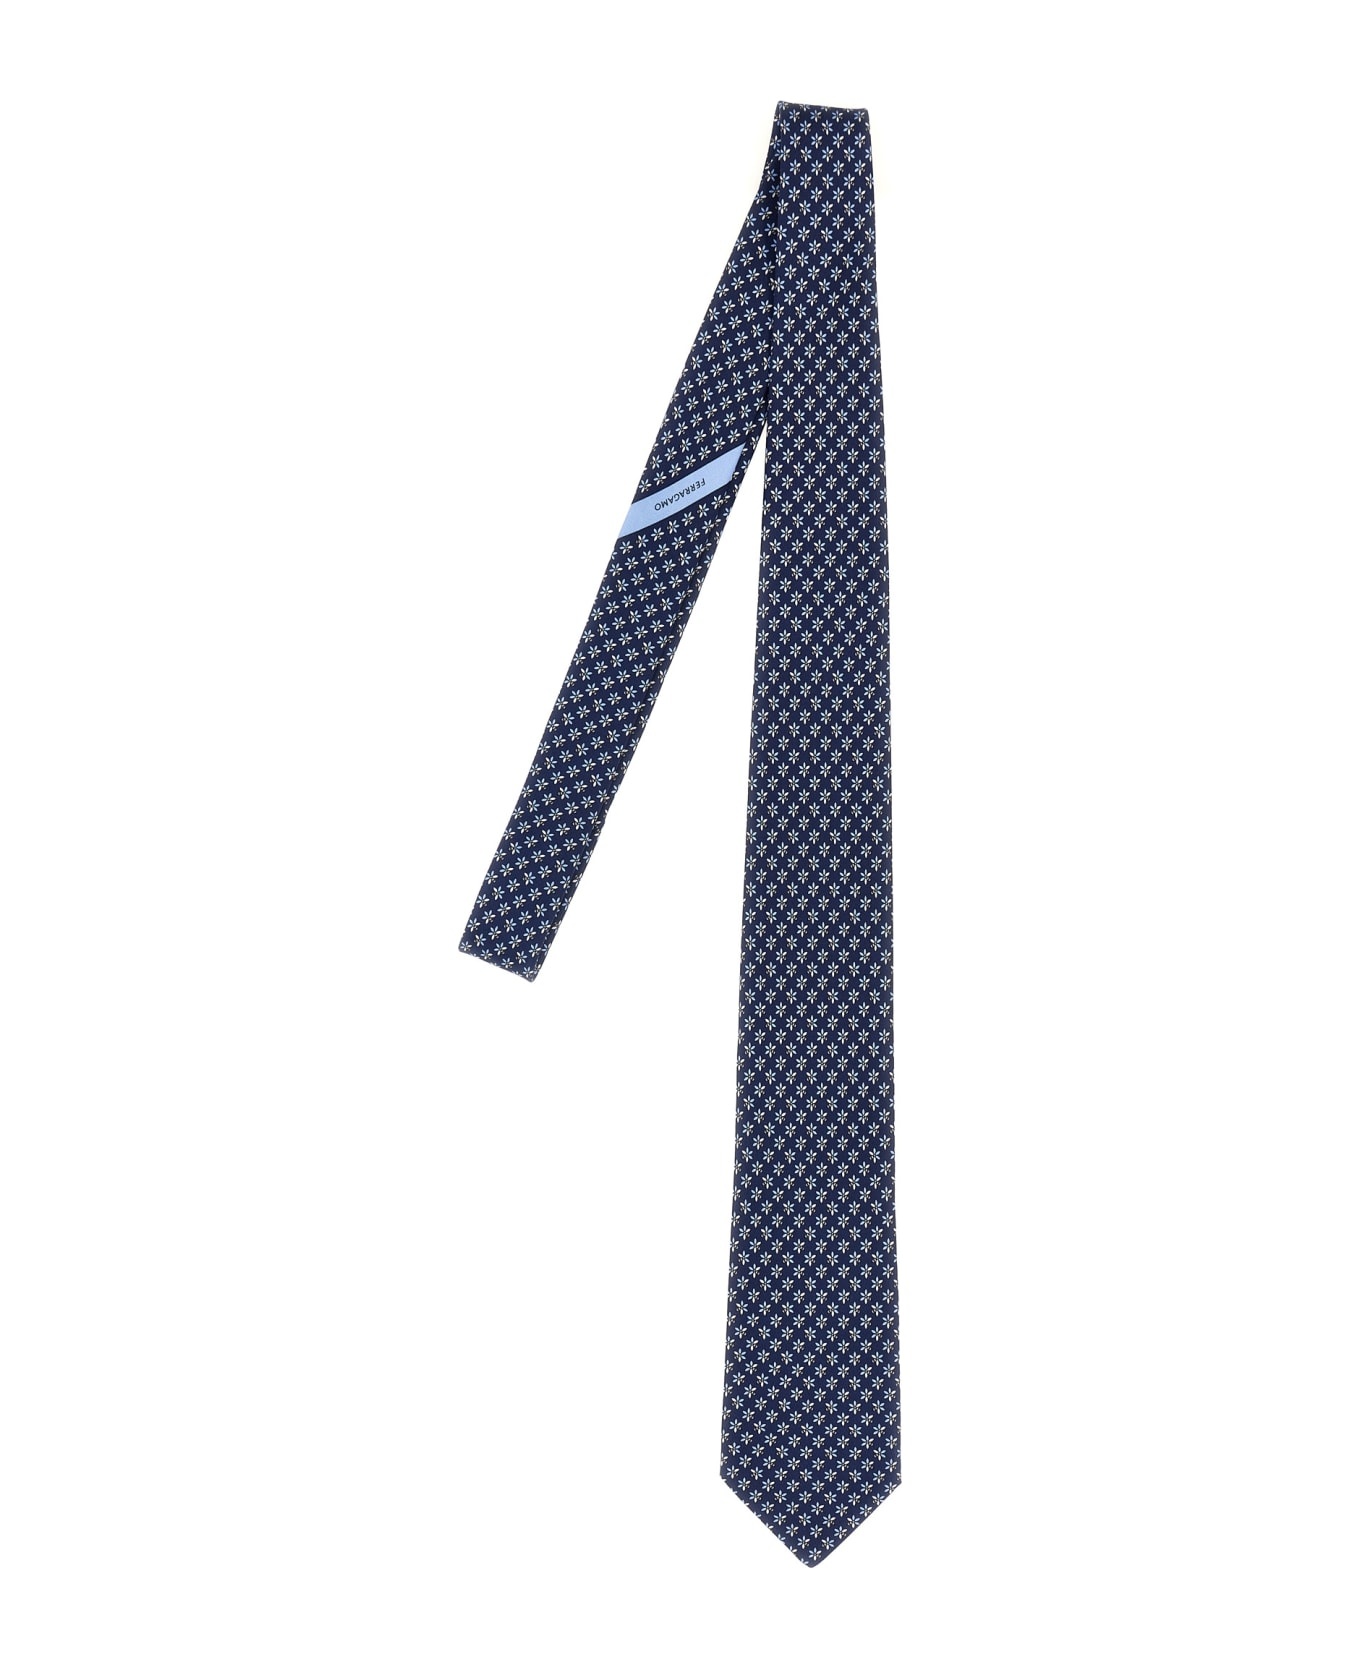 Printed Tie - 1